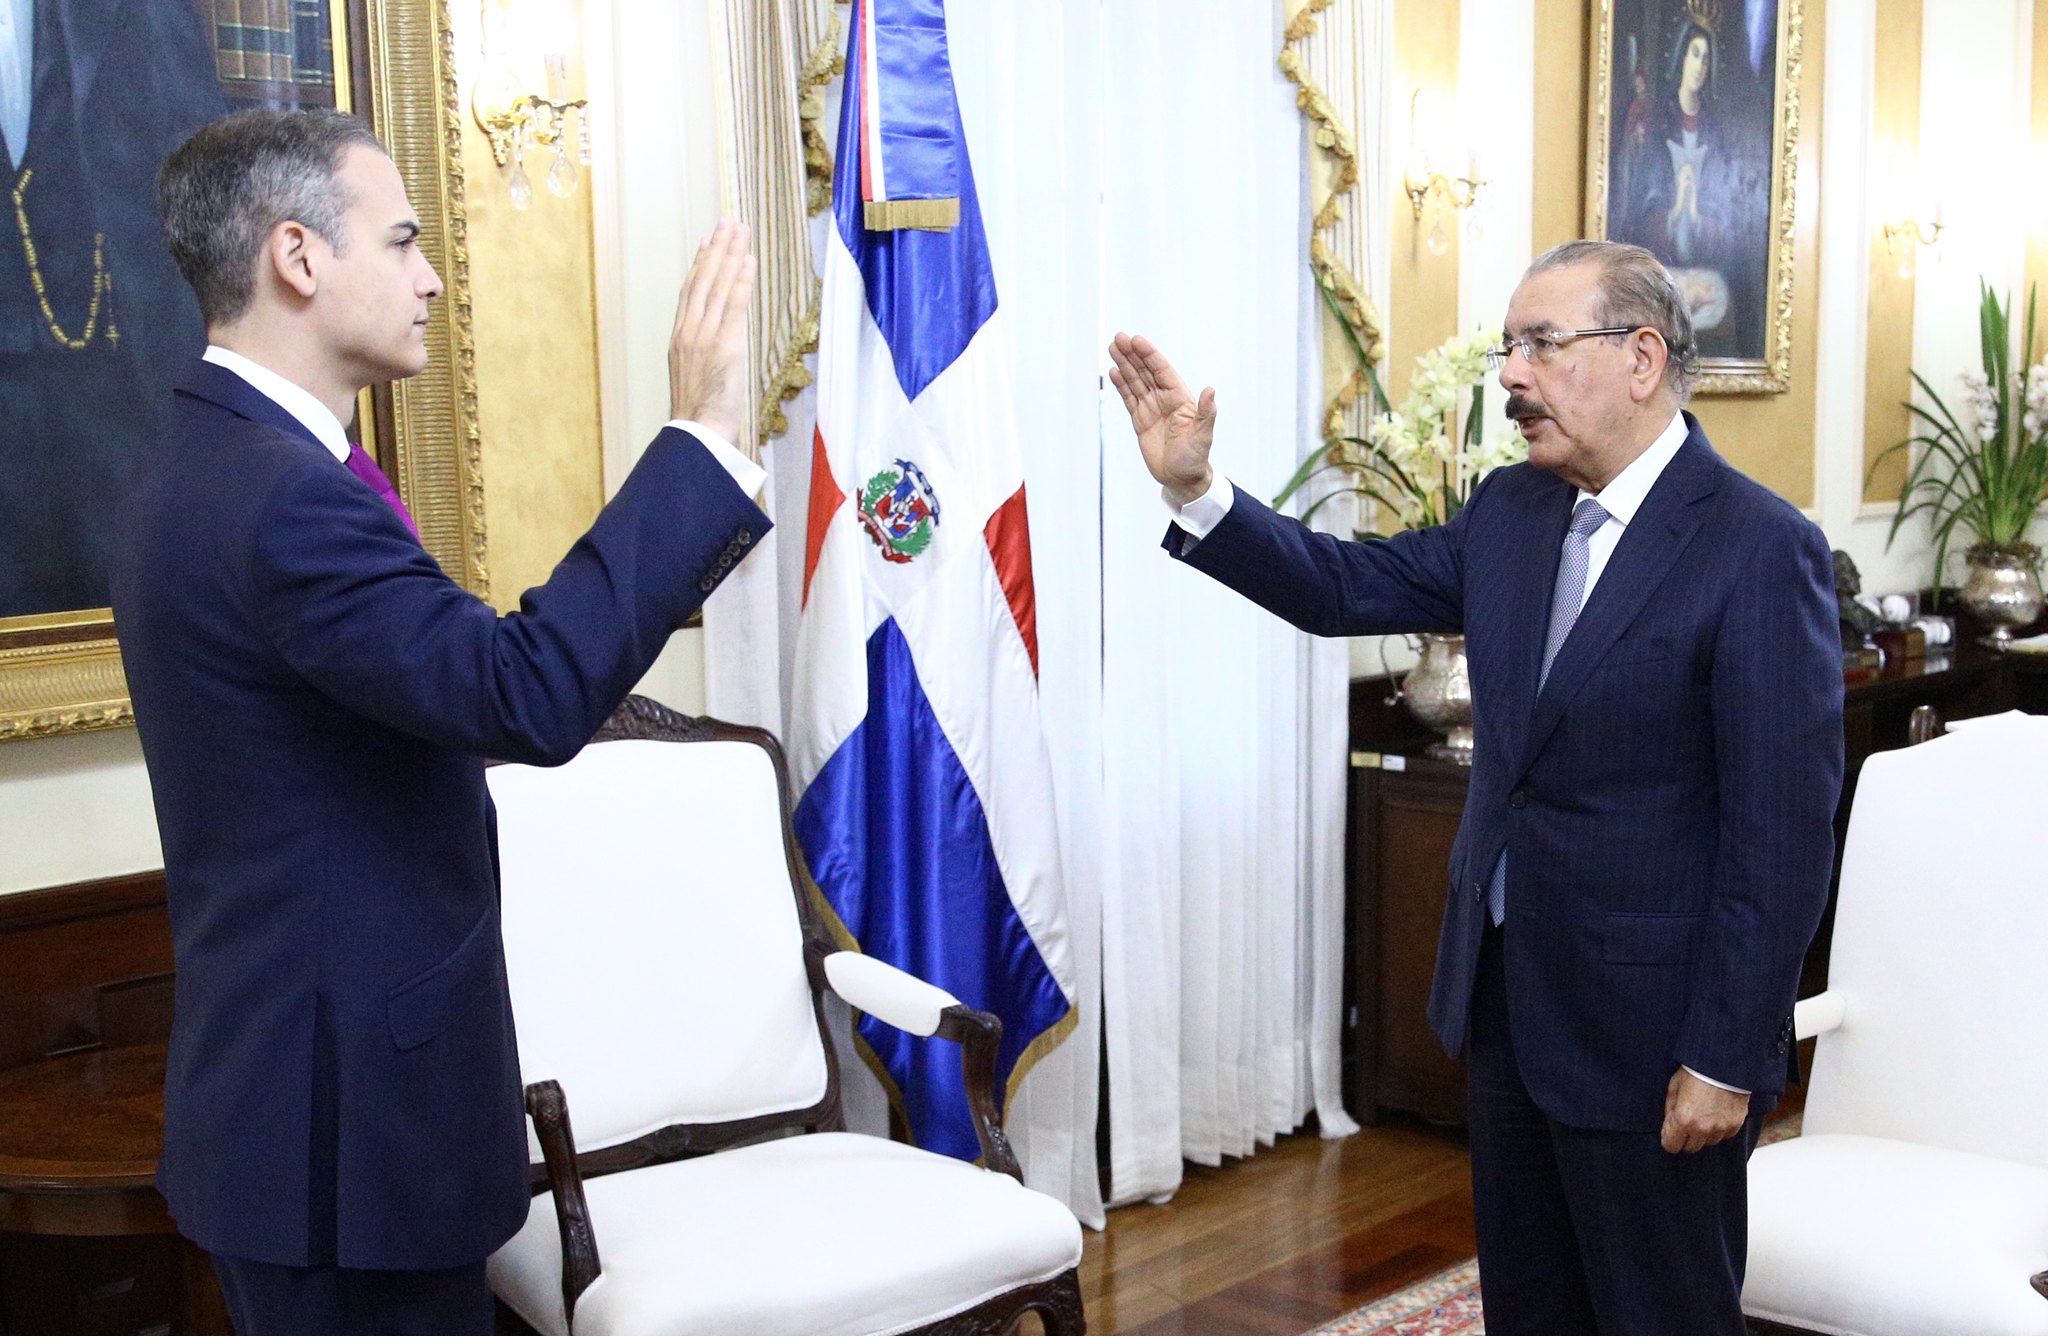 REPÚBLICA DOMINICANA: Presidente Danilo Medina juramenta a Josué Fiallo como representante permanente de República Dominicana ante la OEA